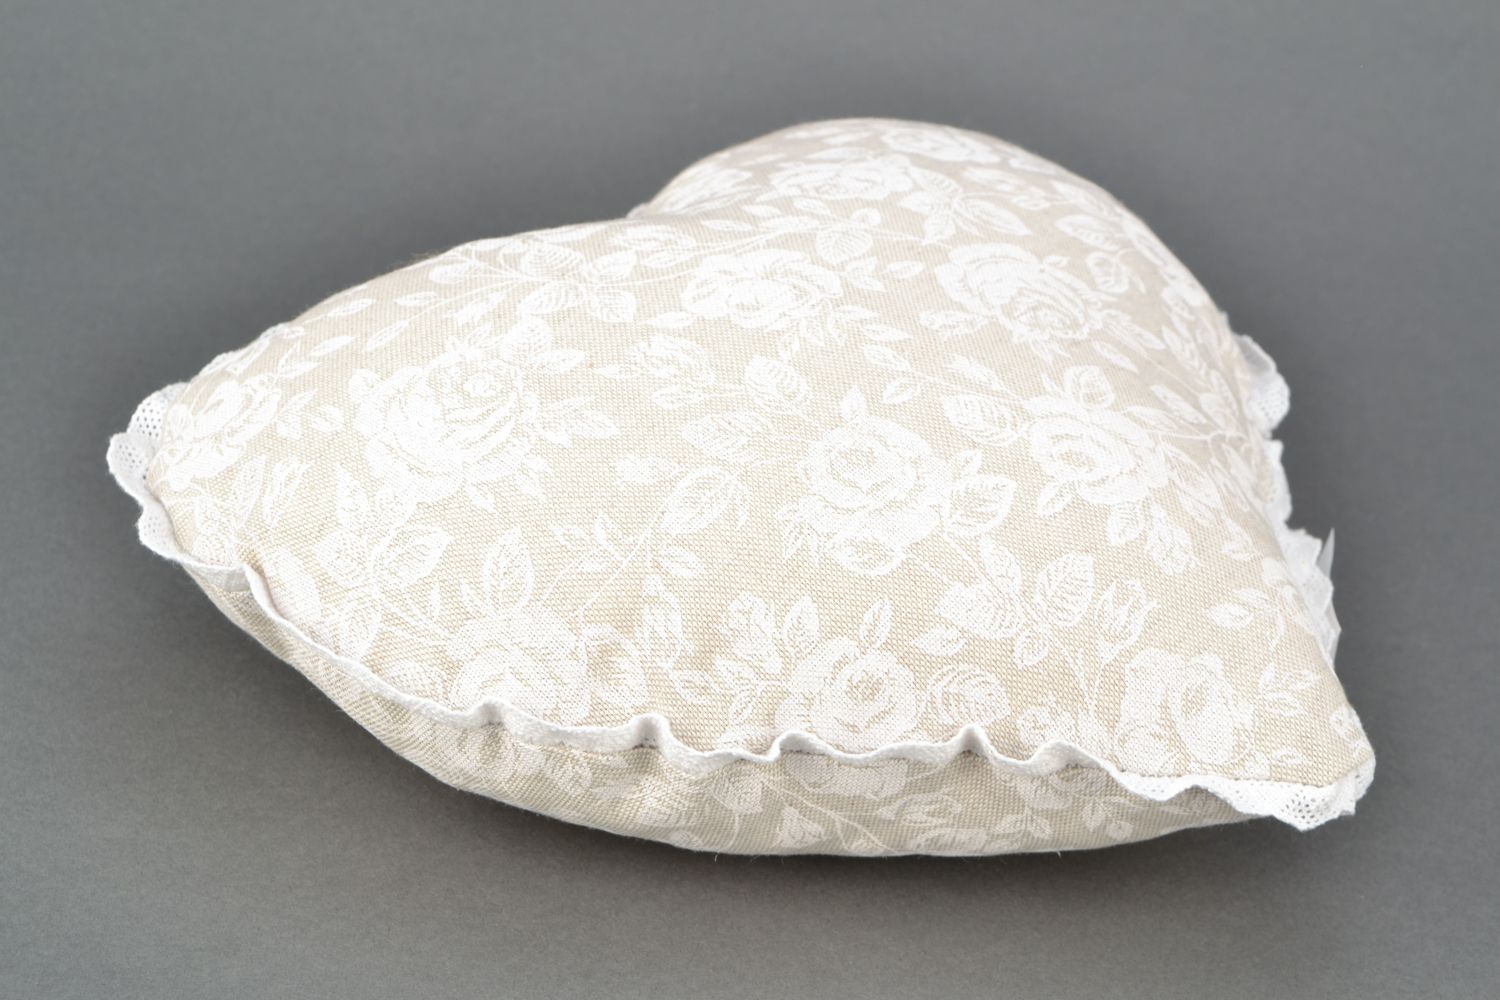 Интерьерная подушка в виде сердца из ткани и кружева Белая роза фото 3